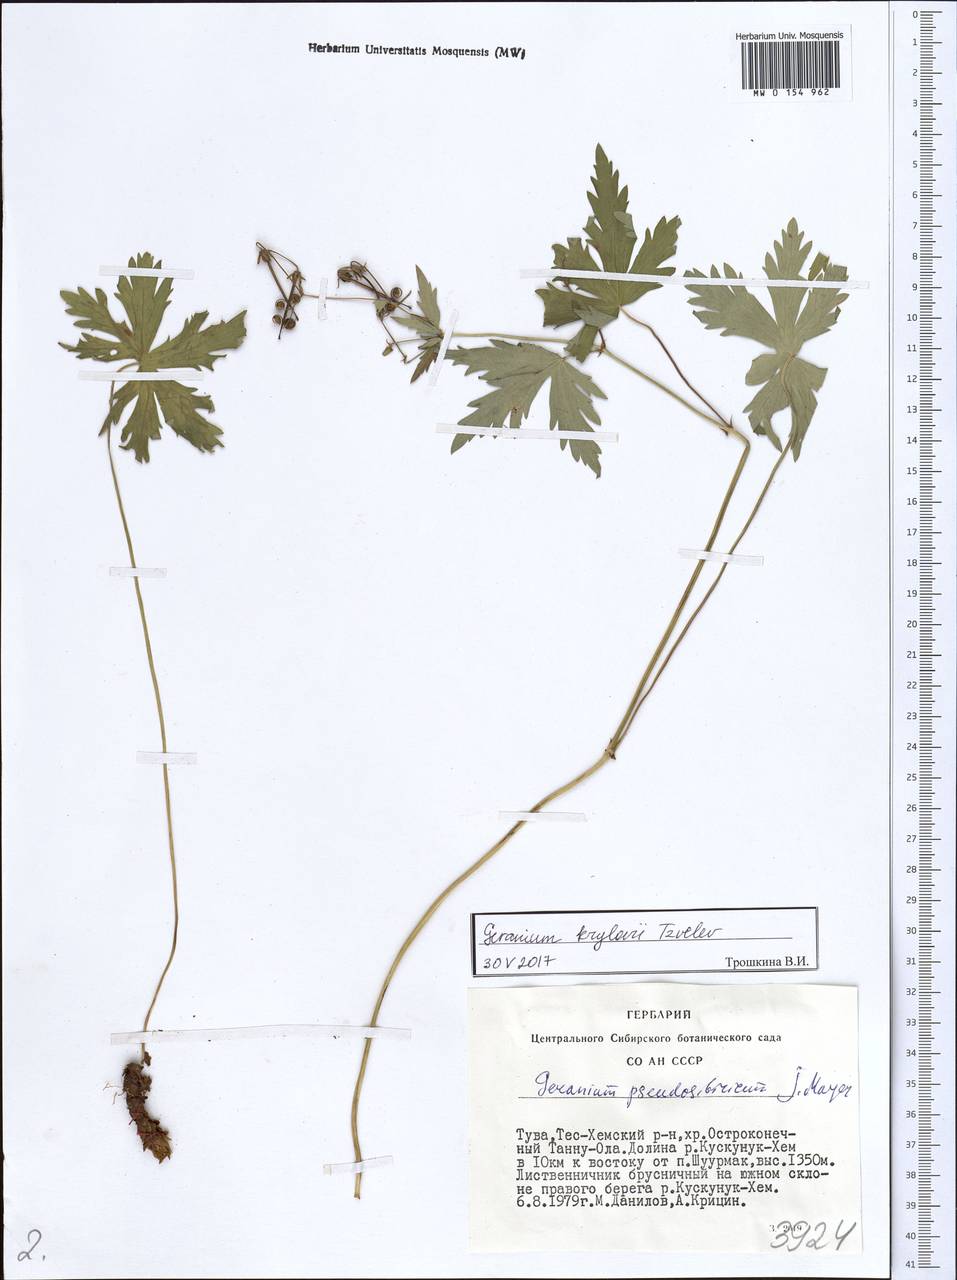 Geranium sylvaticum L., Siberia, Altai & Sayany Mountains (S2) (Russia)